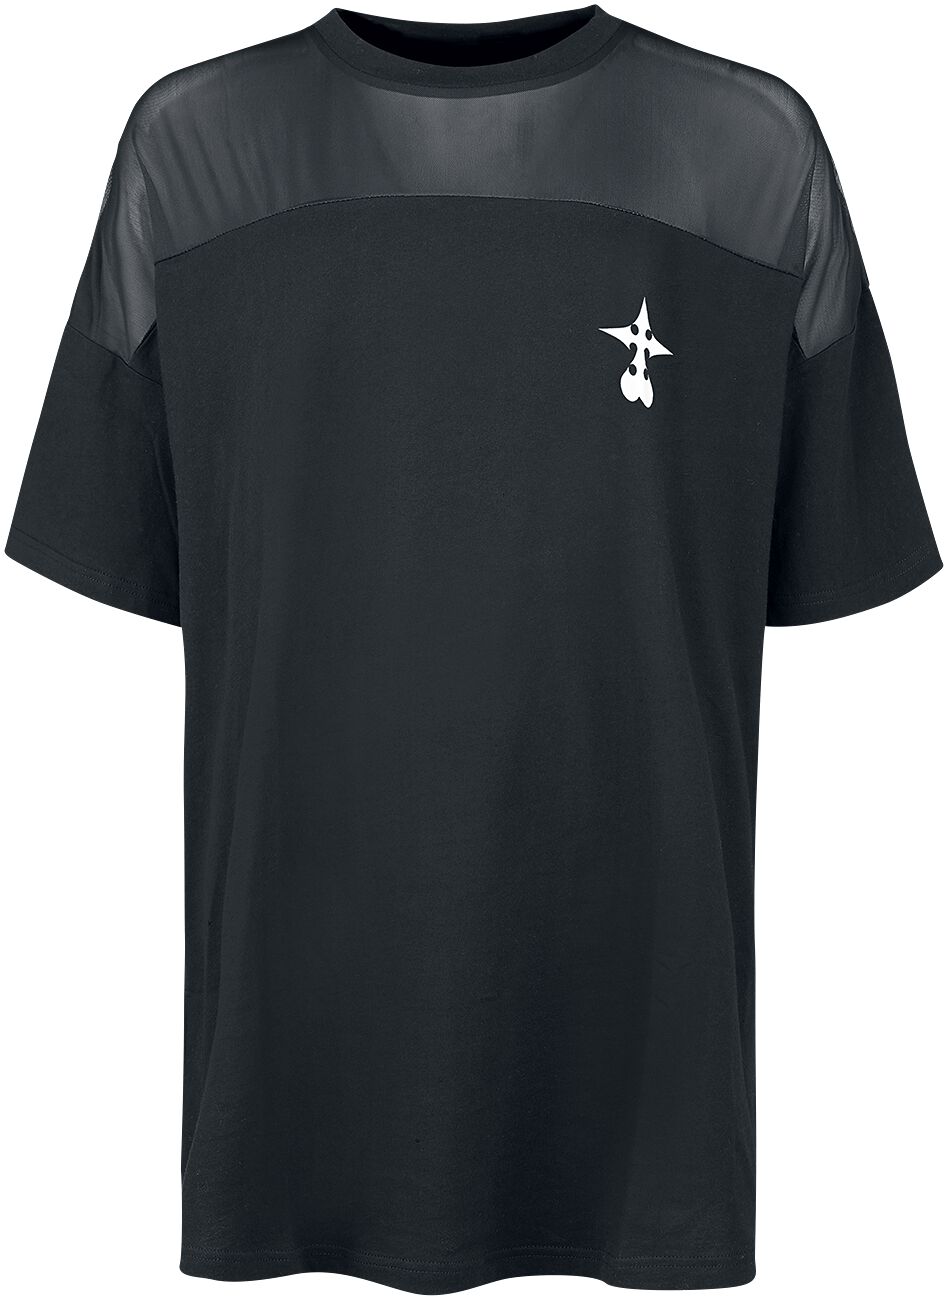 T-Shirt Manches courtes Gaming de Kingdom Hearts - Organisation XIII - S à XXL - pour Femme - noir